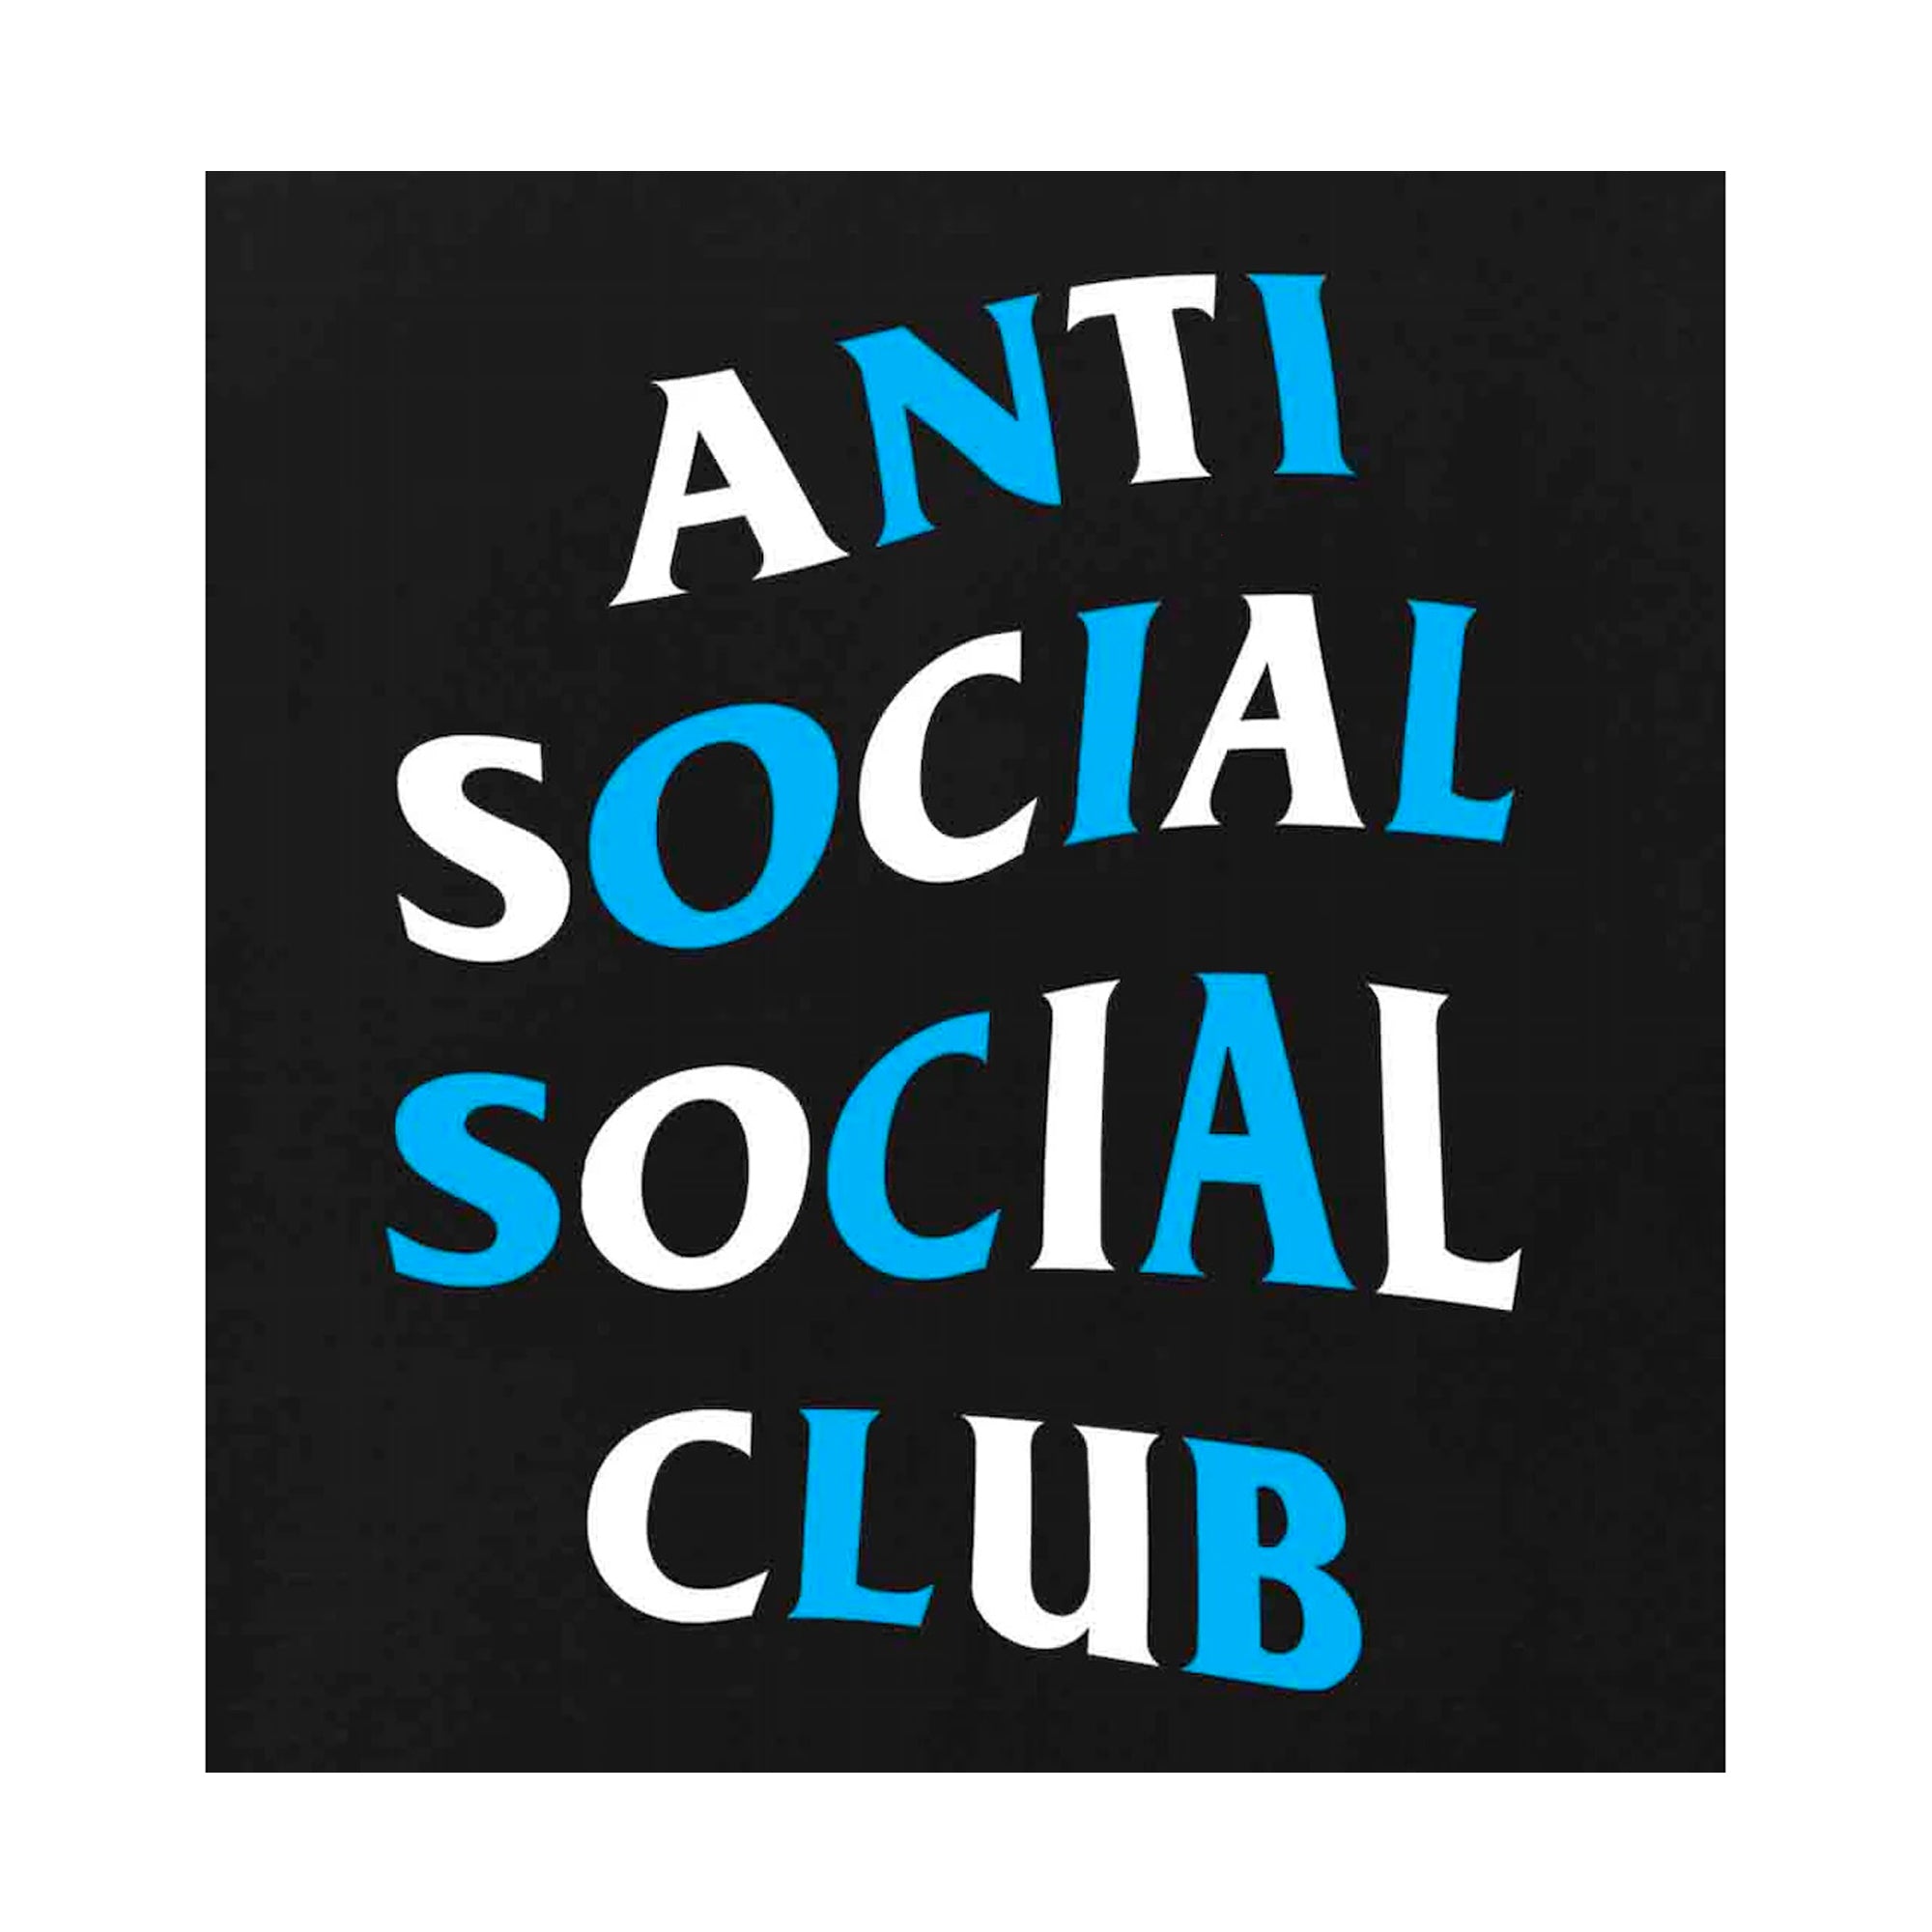 Anti Social Social Club Enrolled Tee Black-PLUS